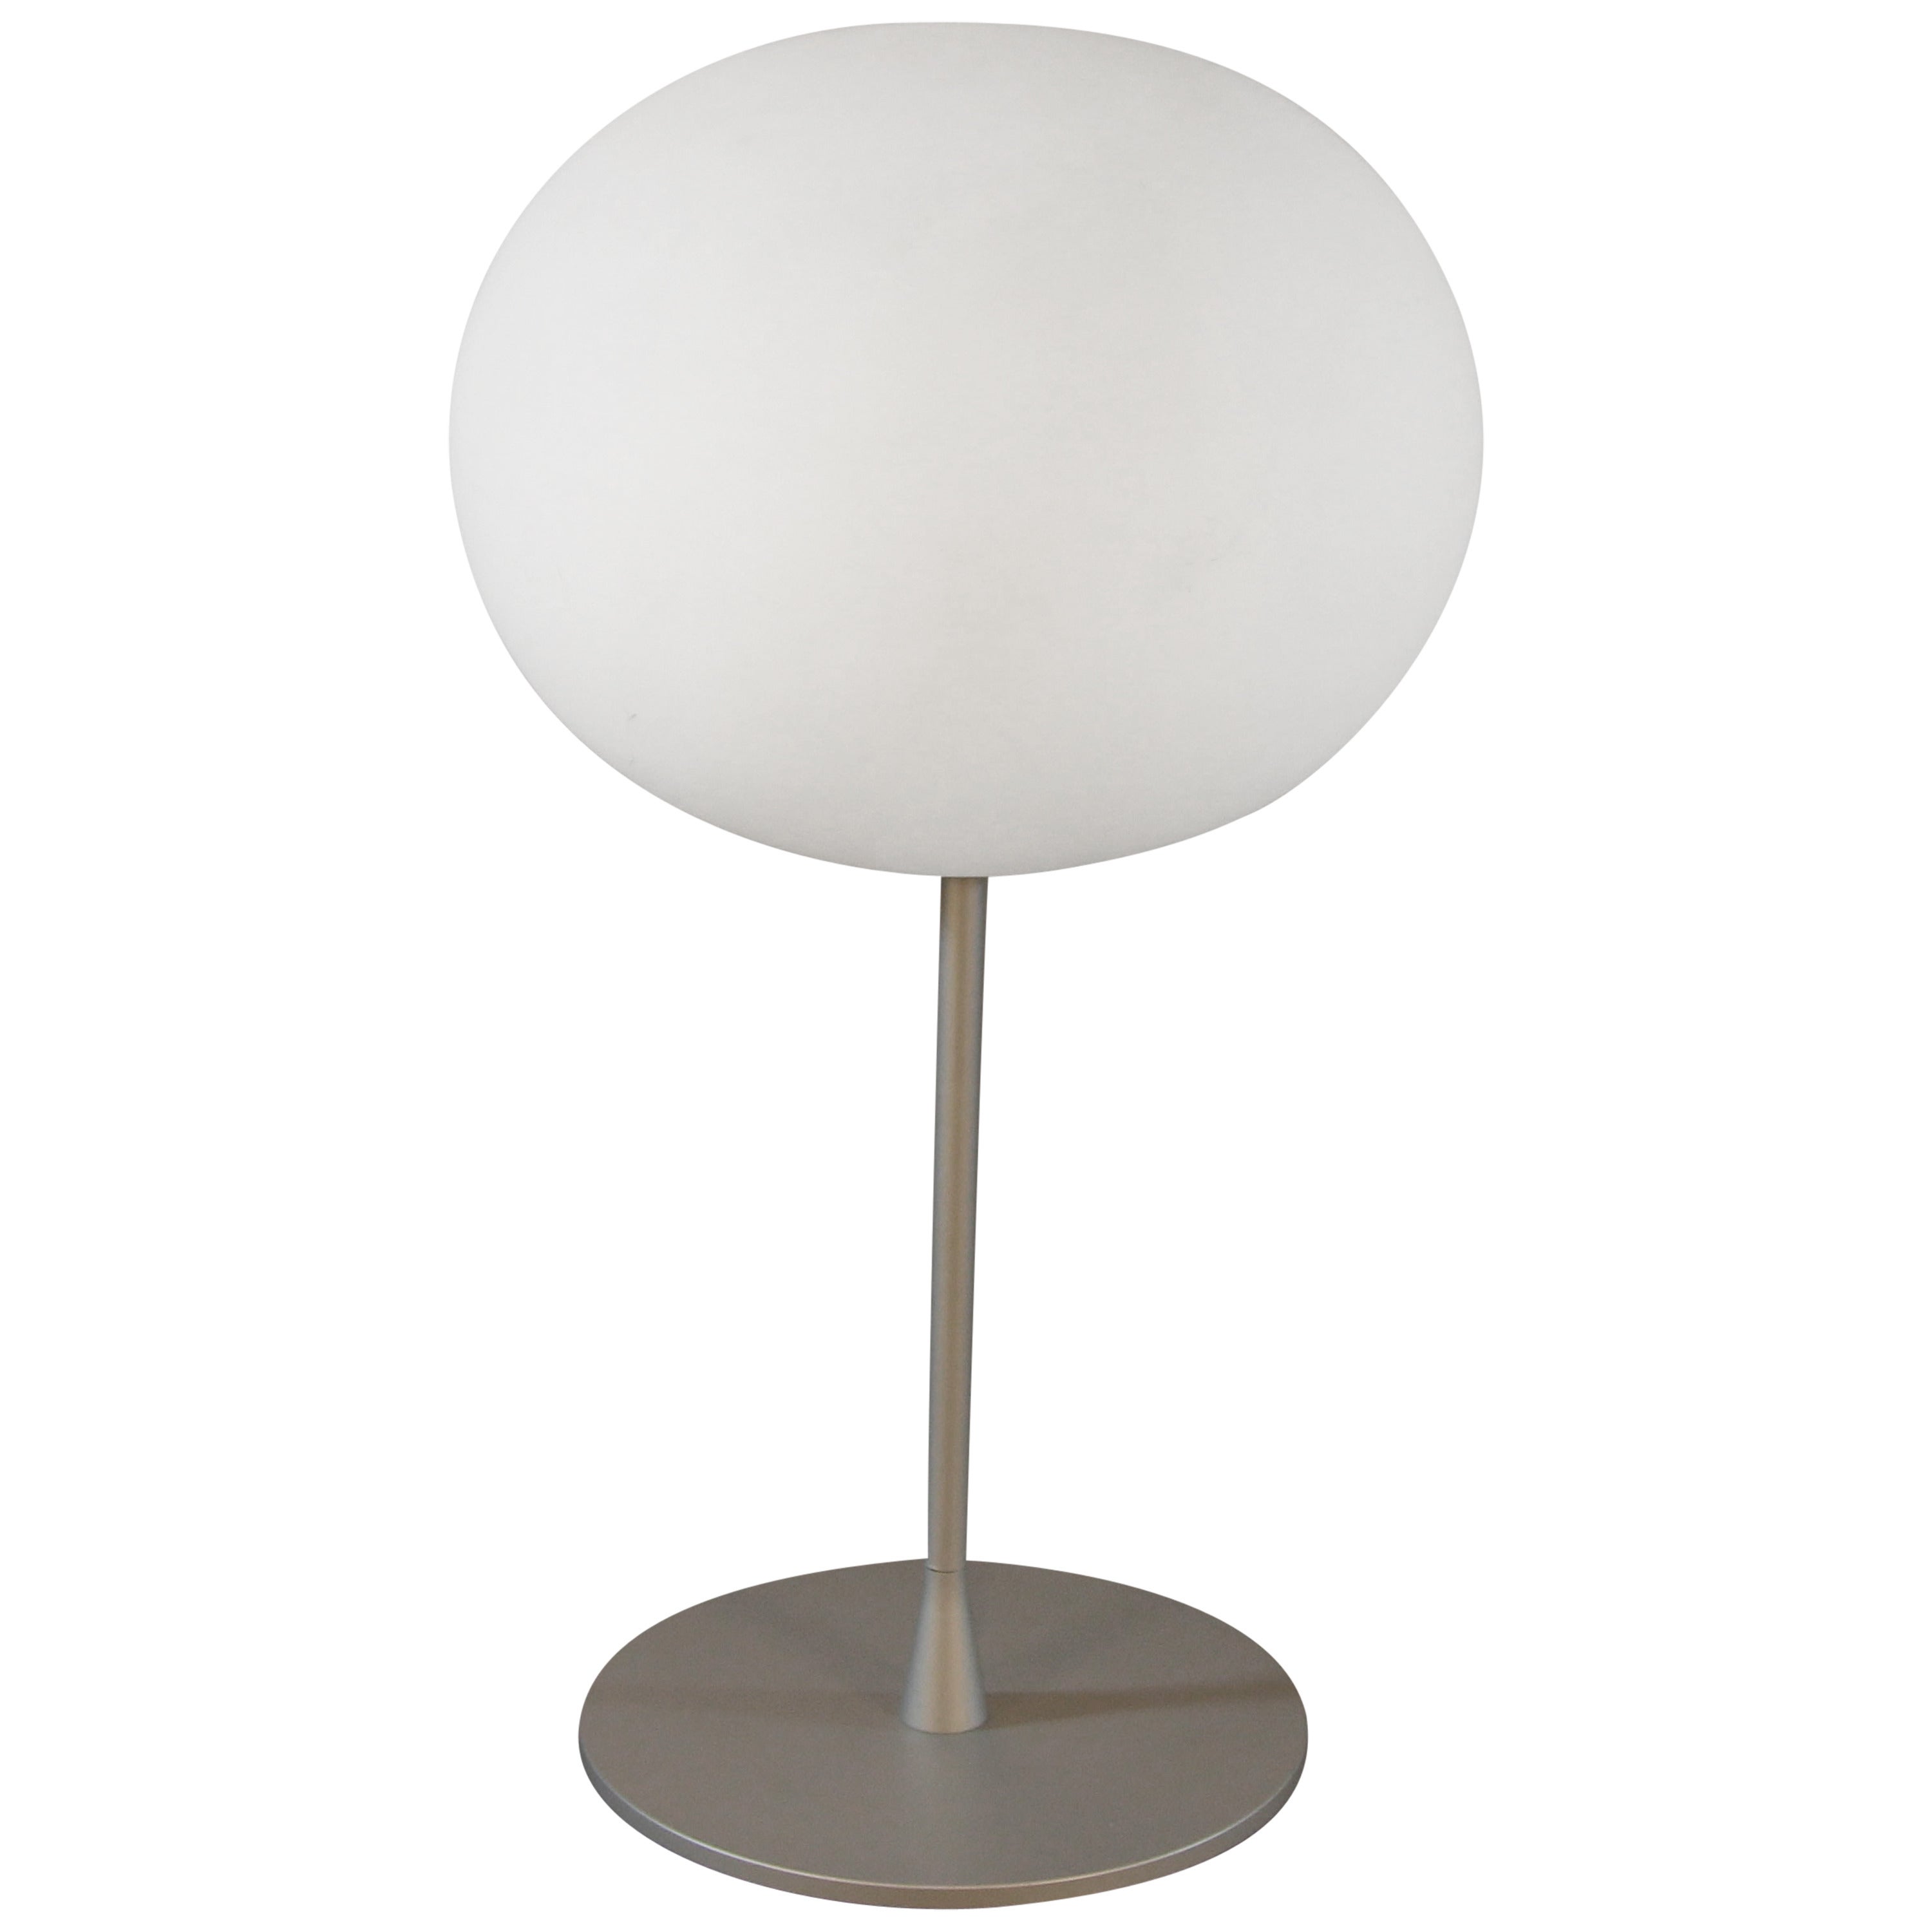 Jasper Morrison for Flos, Glo-Ball T Table Lamp For Sale